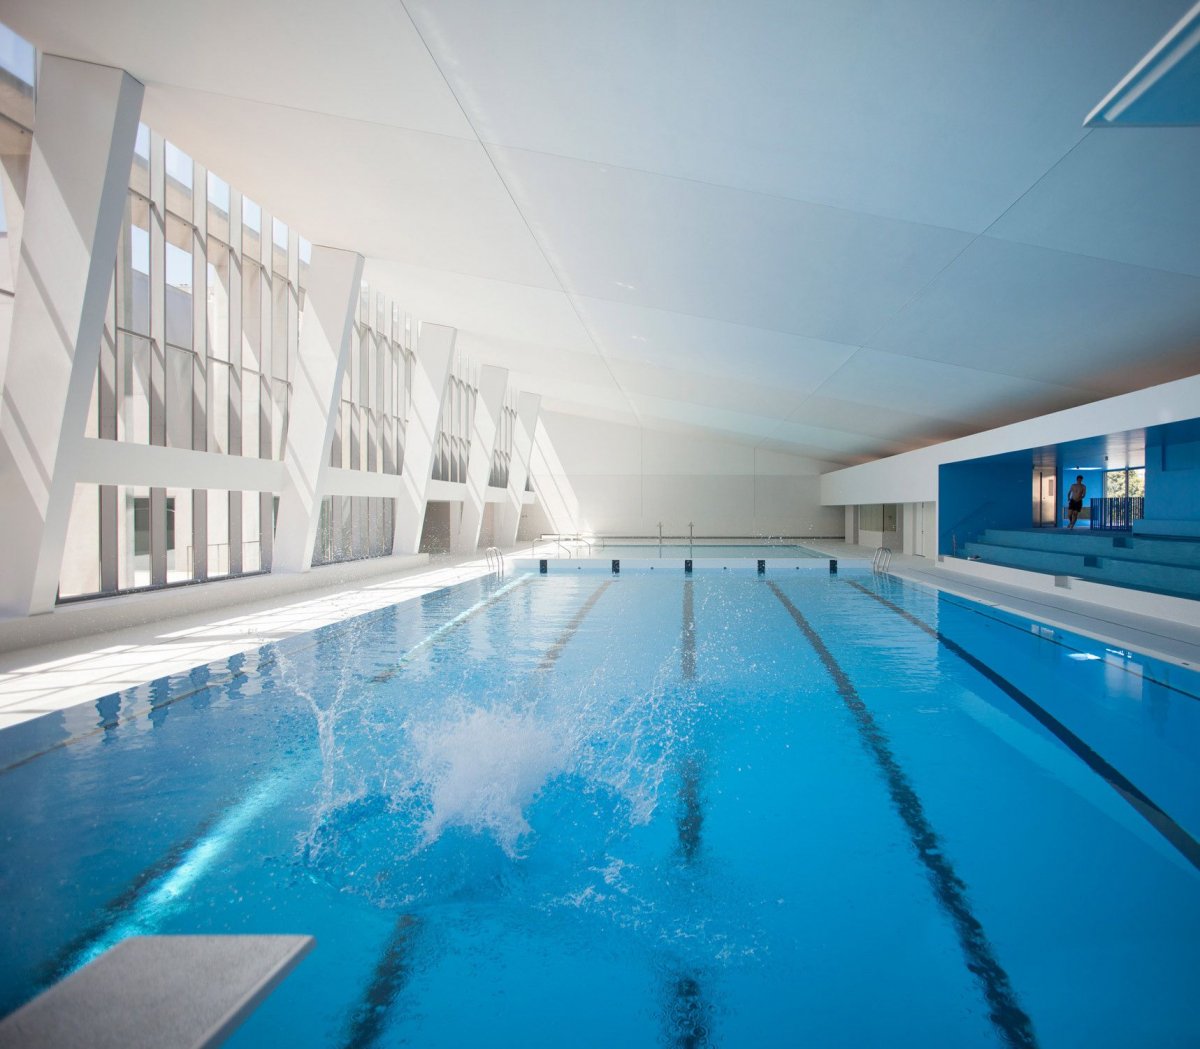 Олимпийский плавательный бассейн